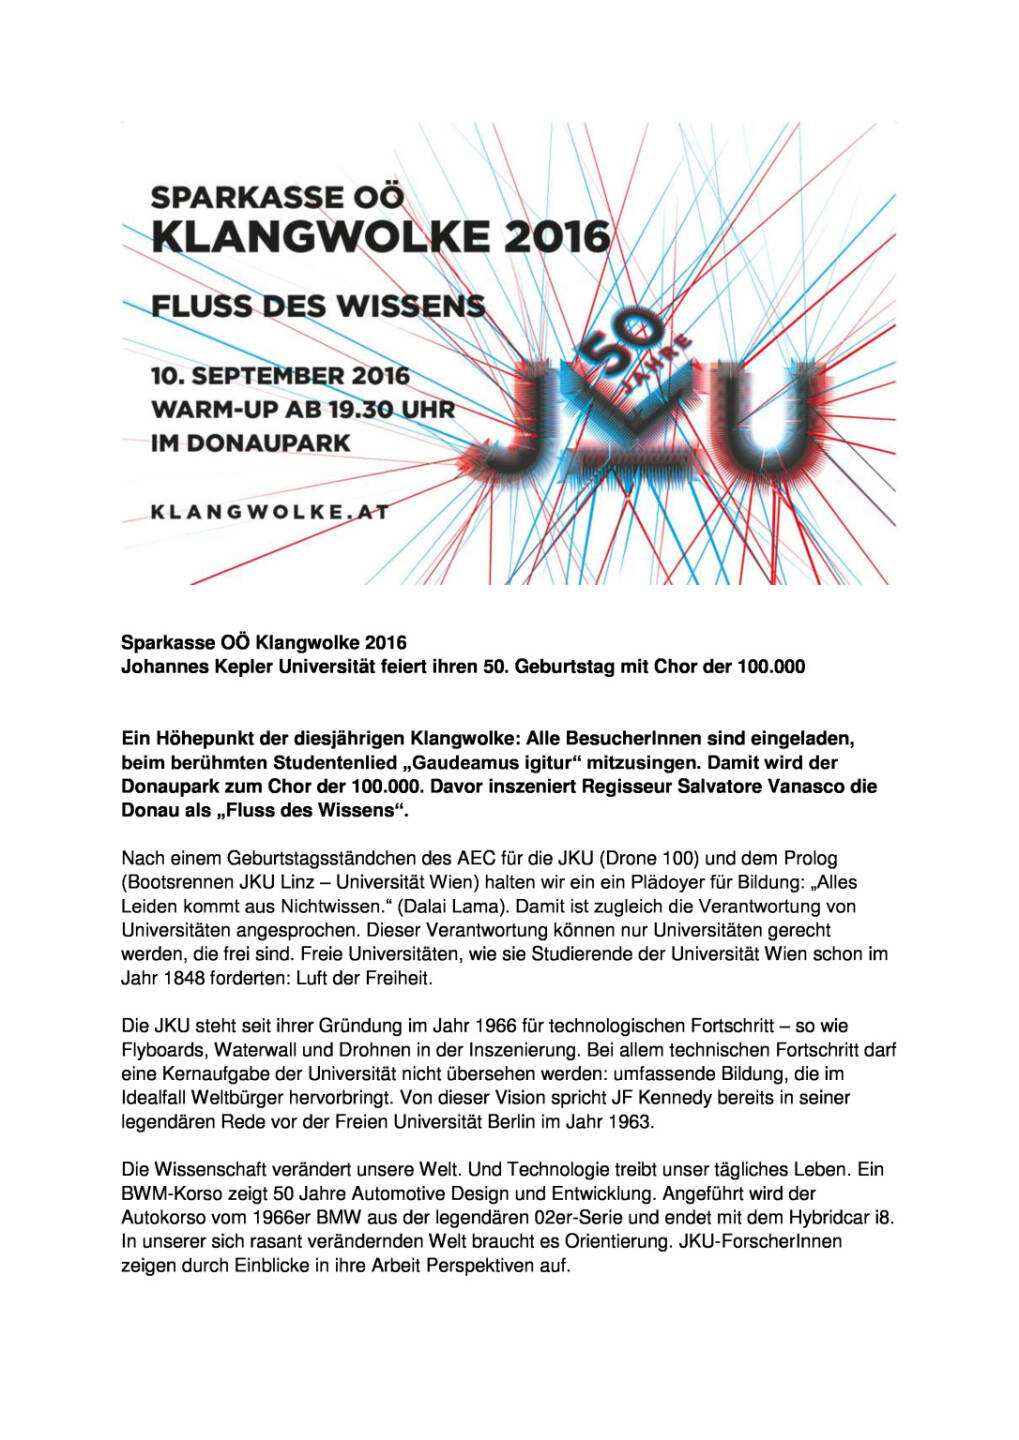 Sparkasse OÖ: Klangwolke 2016, Seite 1/2, komplettes Dokument unter http://boerse-social.com/static/uploads/file_1756_sparkasse_oo_klangwolke_2016.pdf